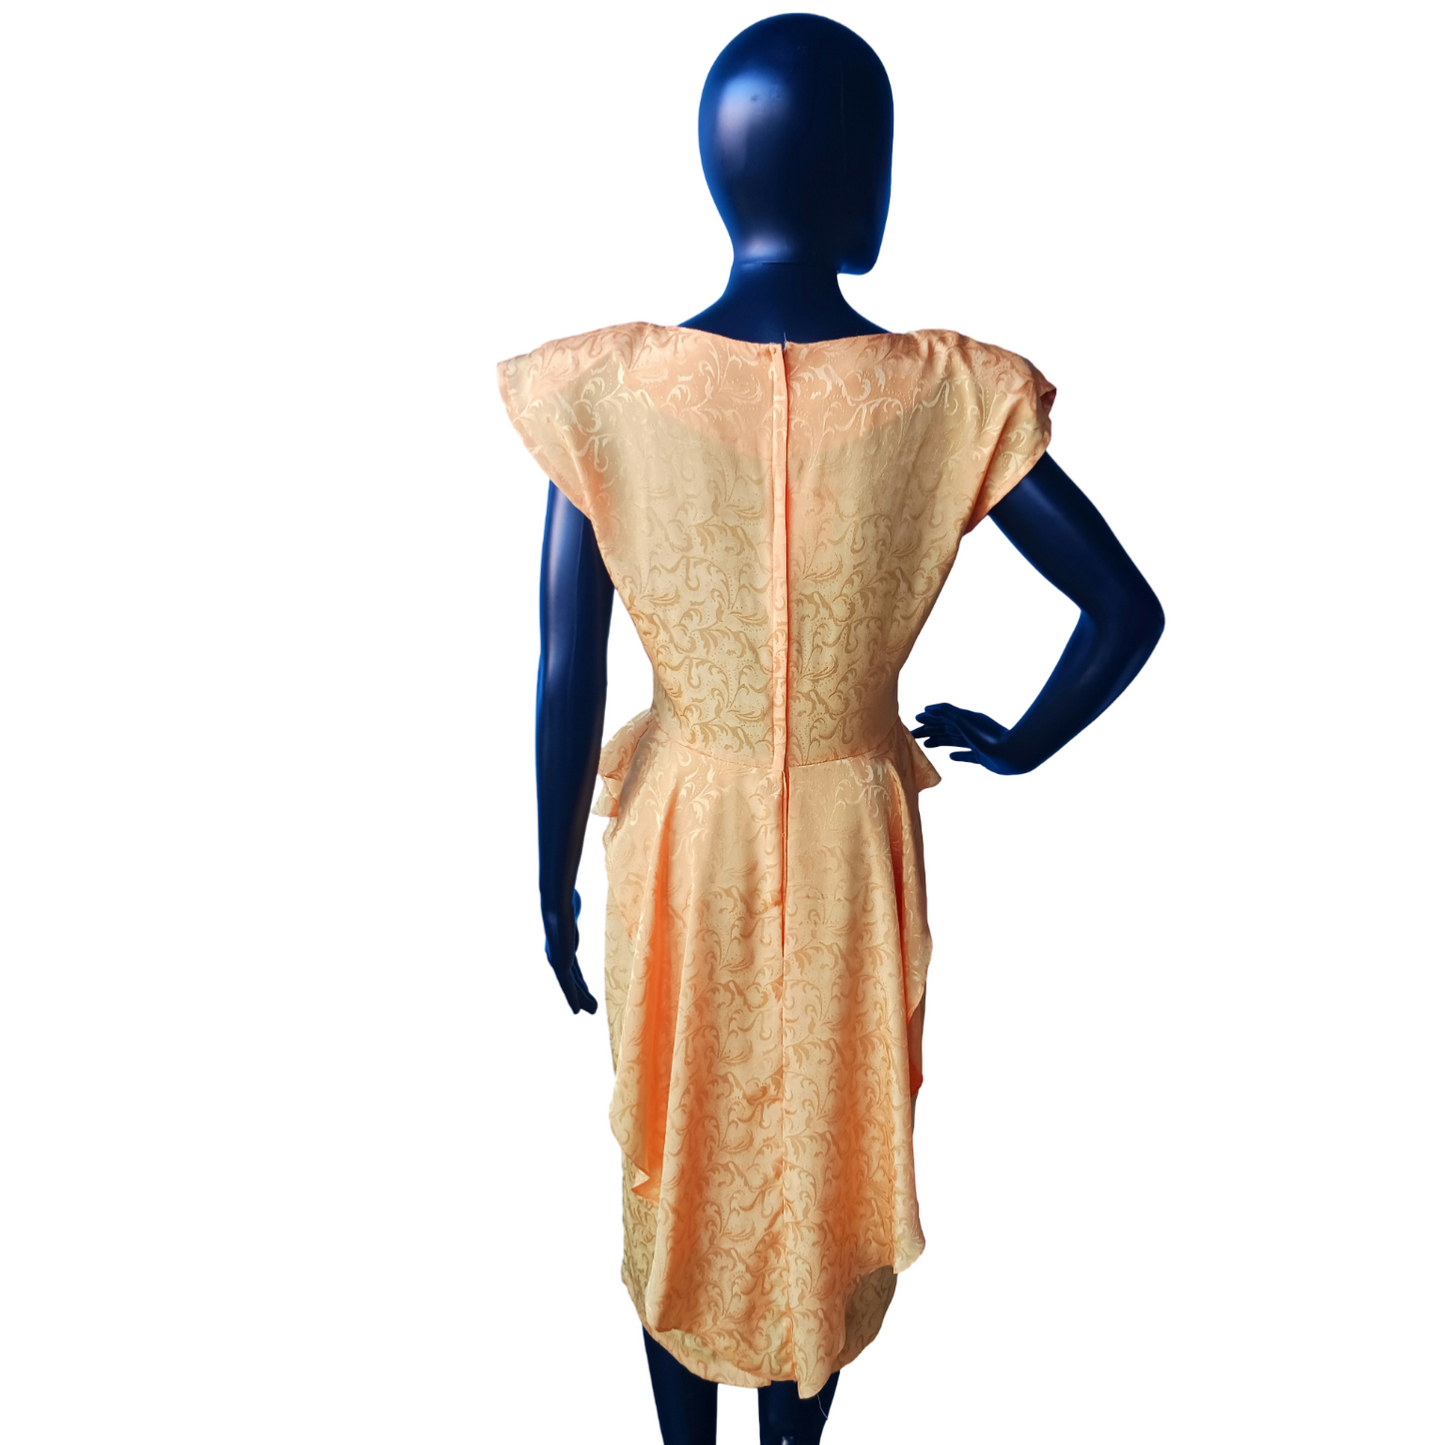 Zum Zum Marigold Yellow Dress, Vintage 1980s